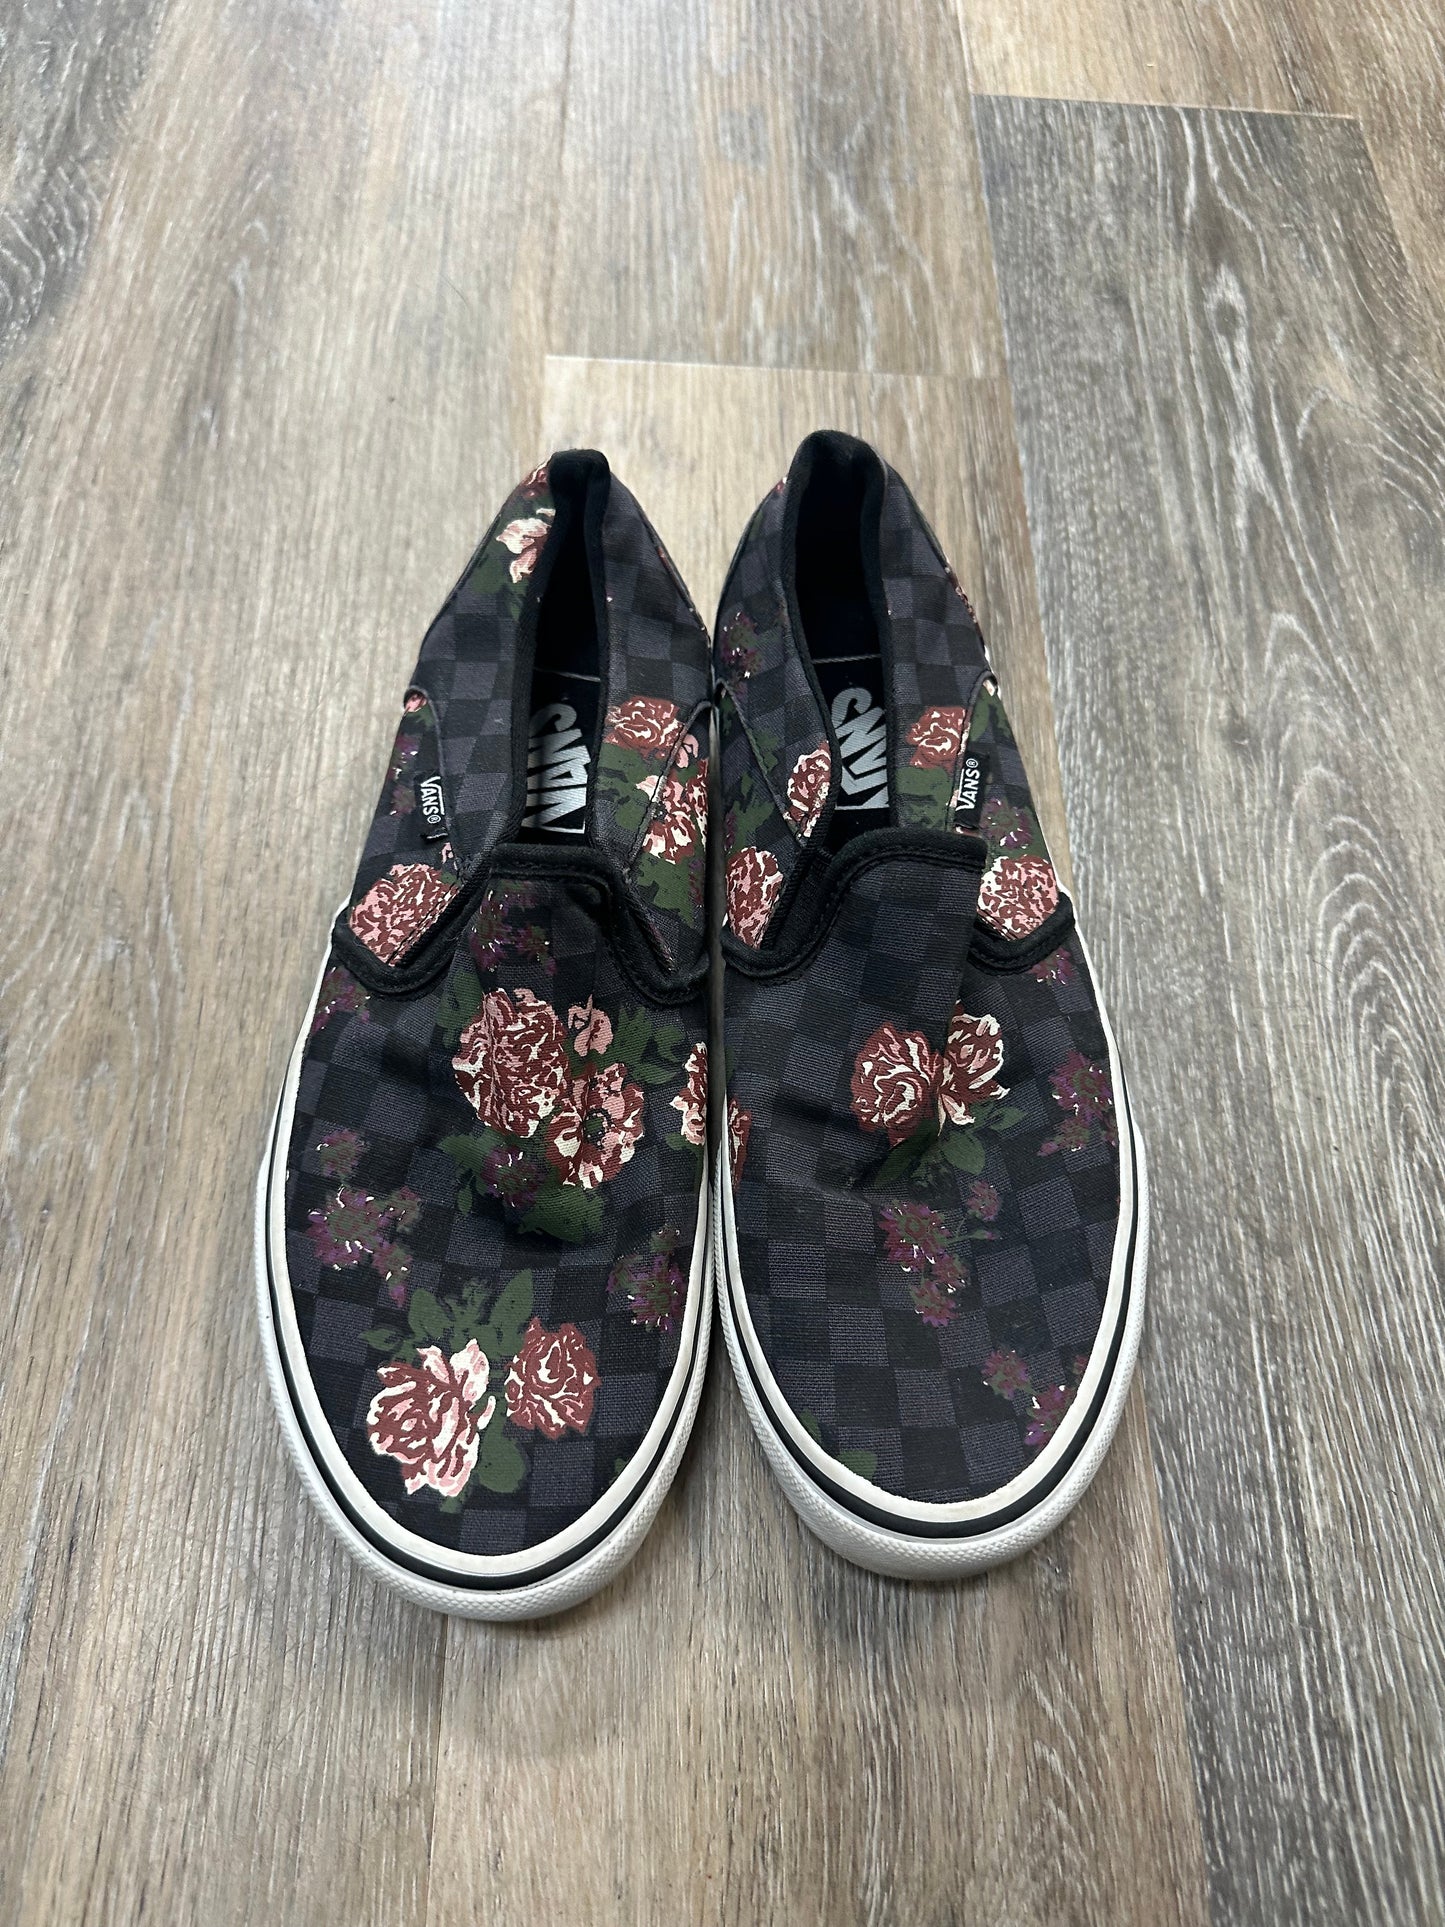 Floral Print Shoes Flats Vans, Size 8